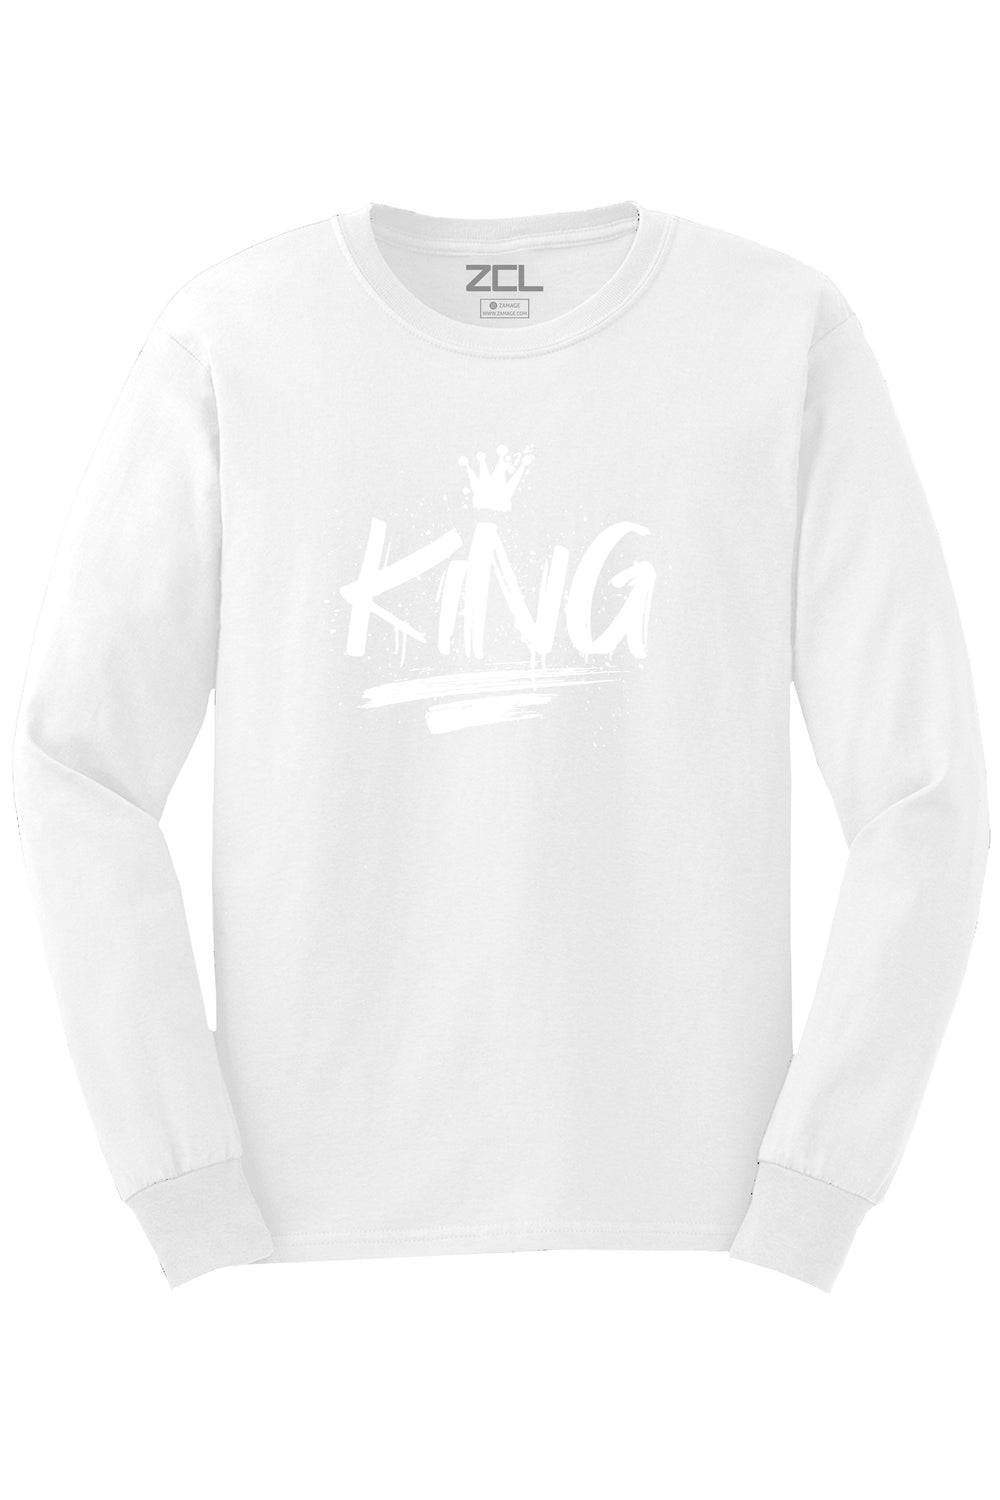 King Long Sleeve Tee (White Logo) - Zamage